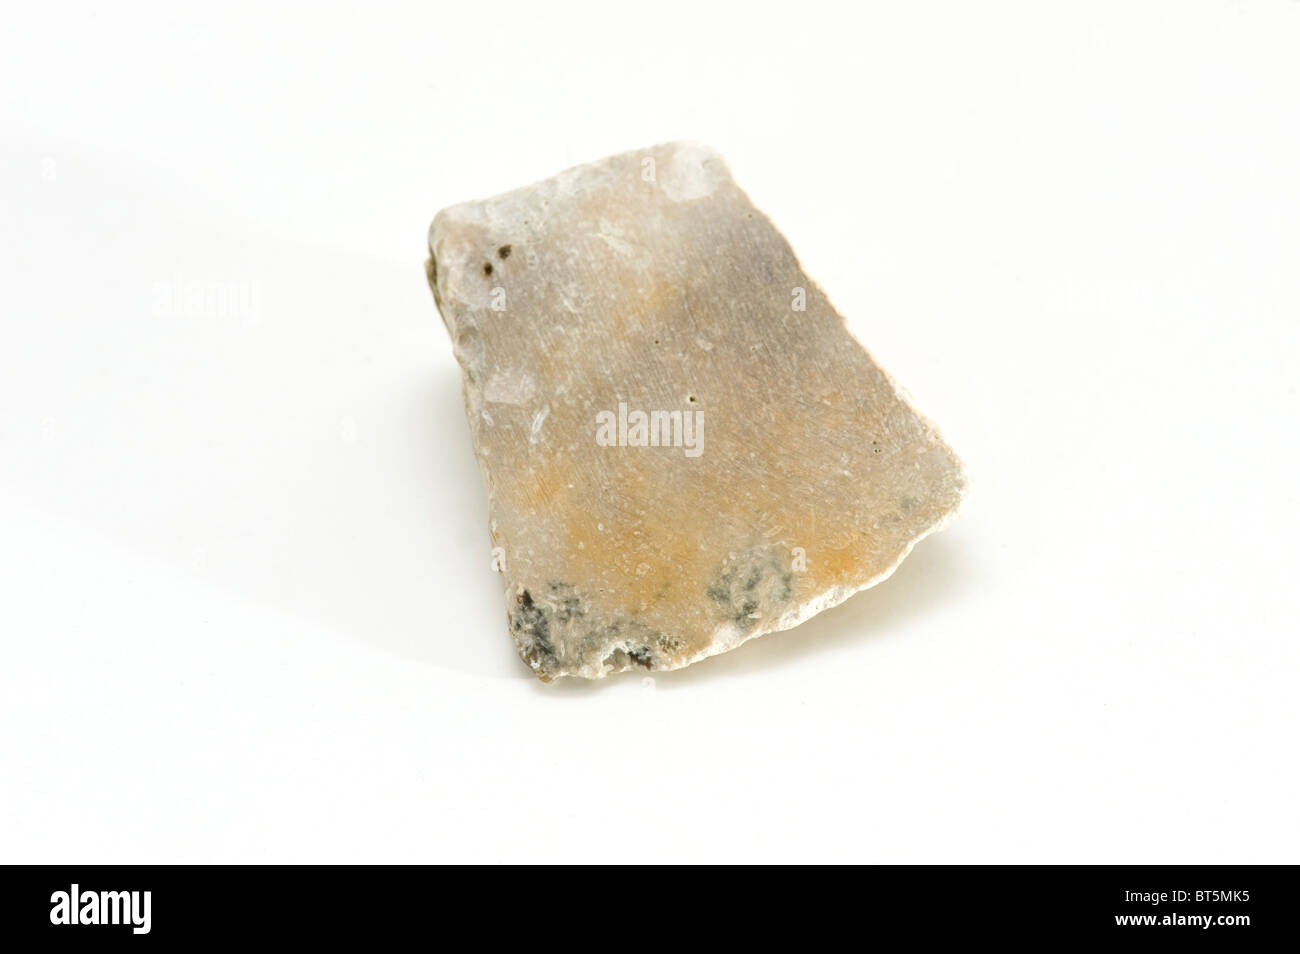 Hacha de mano de la Edad de Piedra (Neolítico) he encontrado poca Correa, Dinamarca Foto de stock